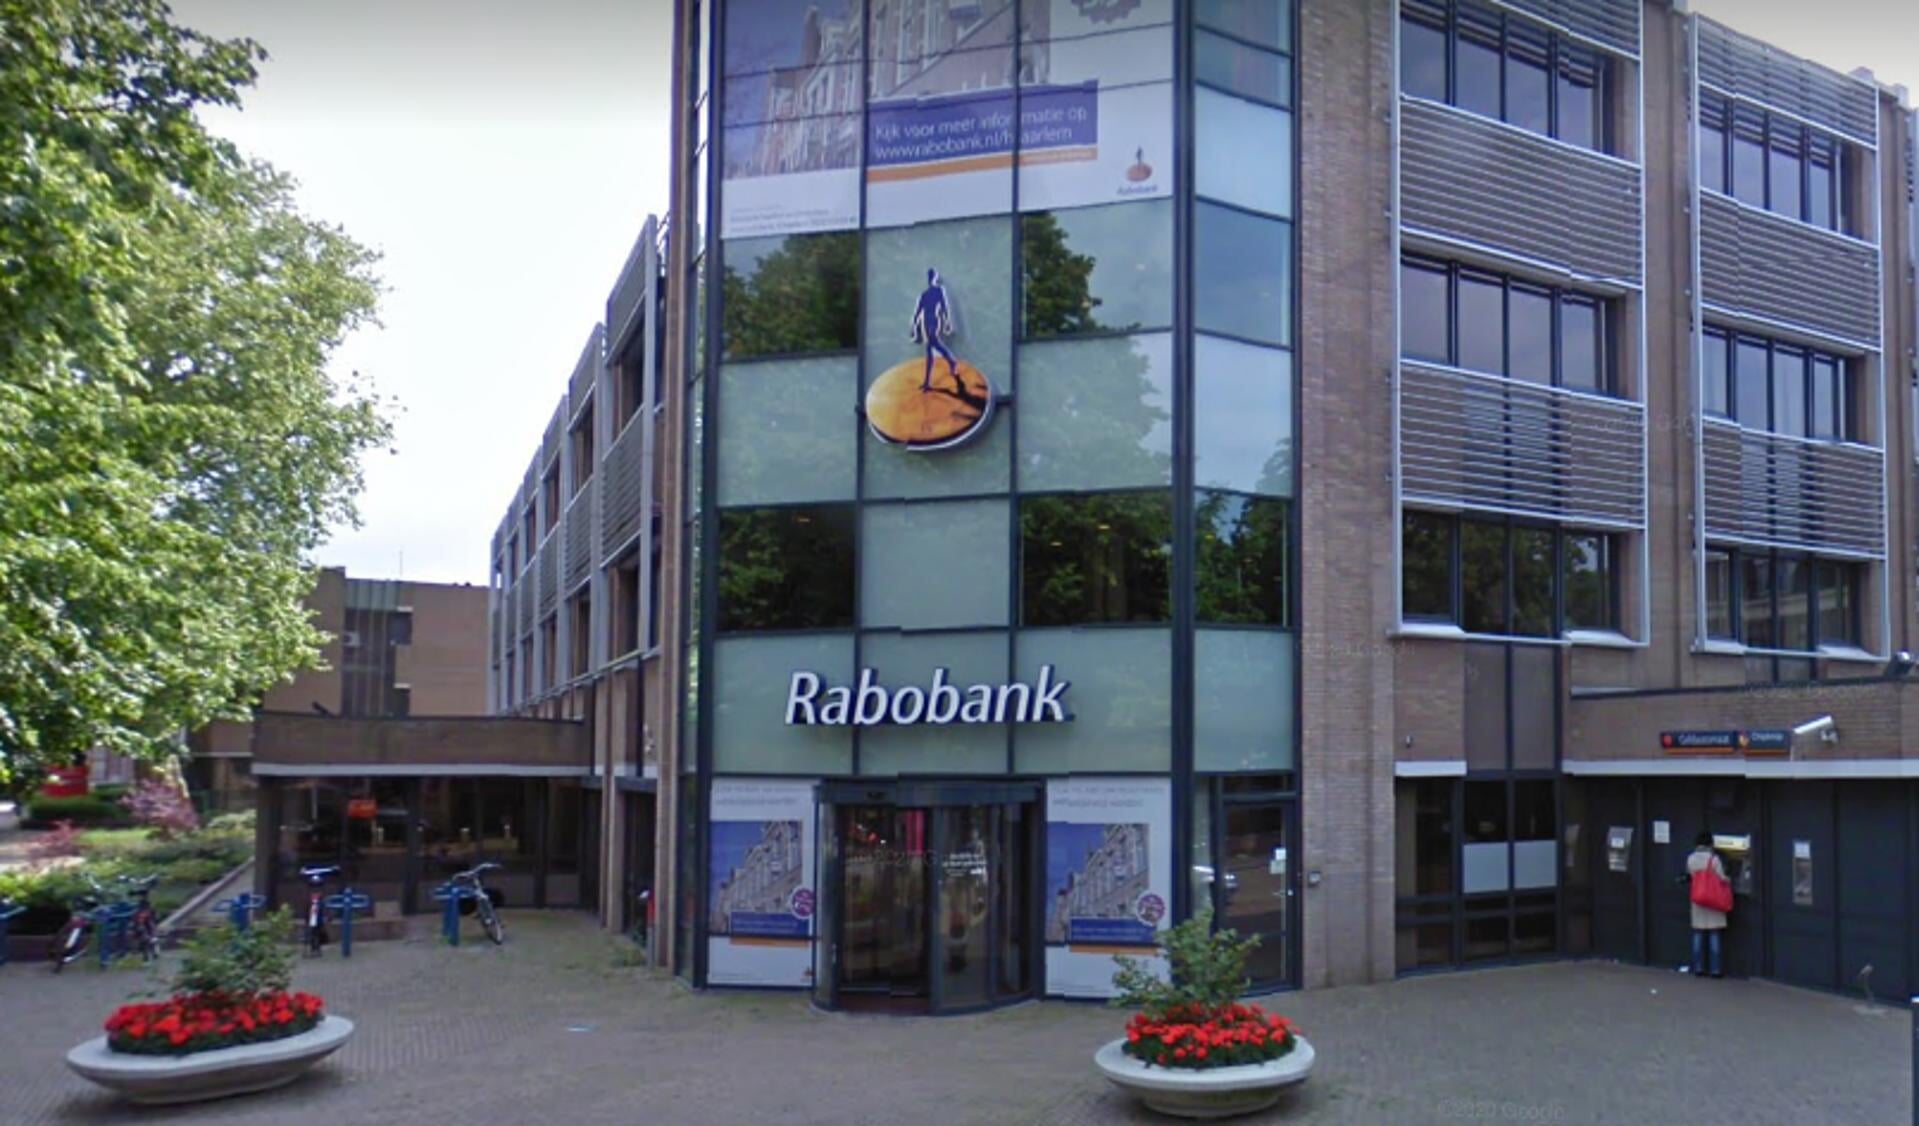 De Rabobank aan de Haarlemse Dreef.